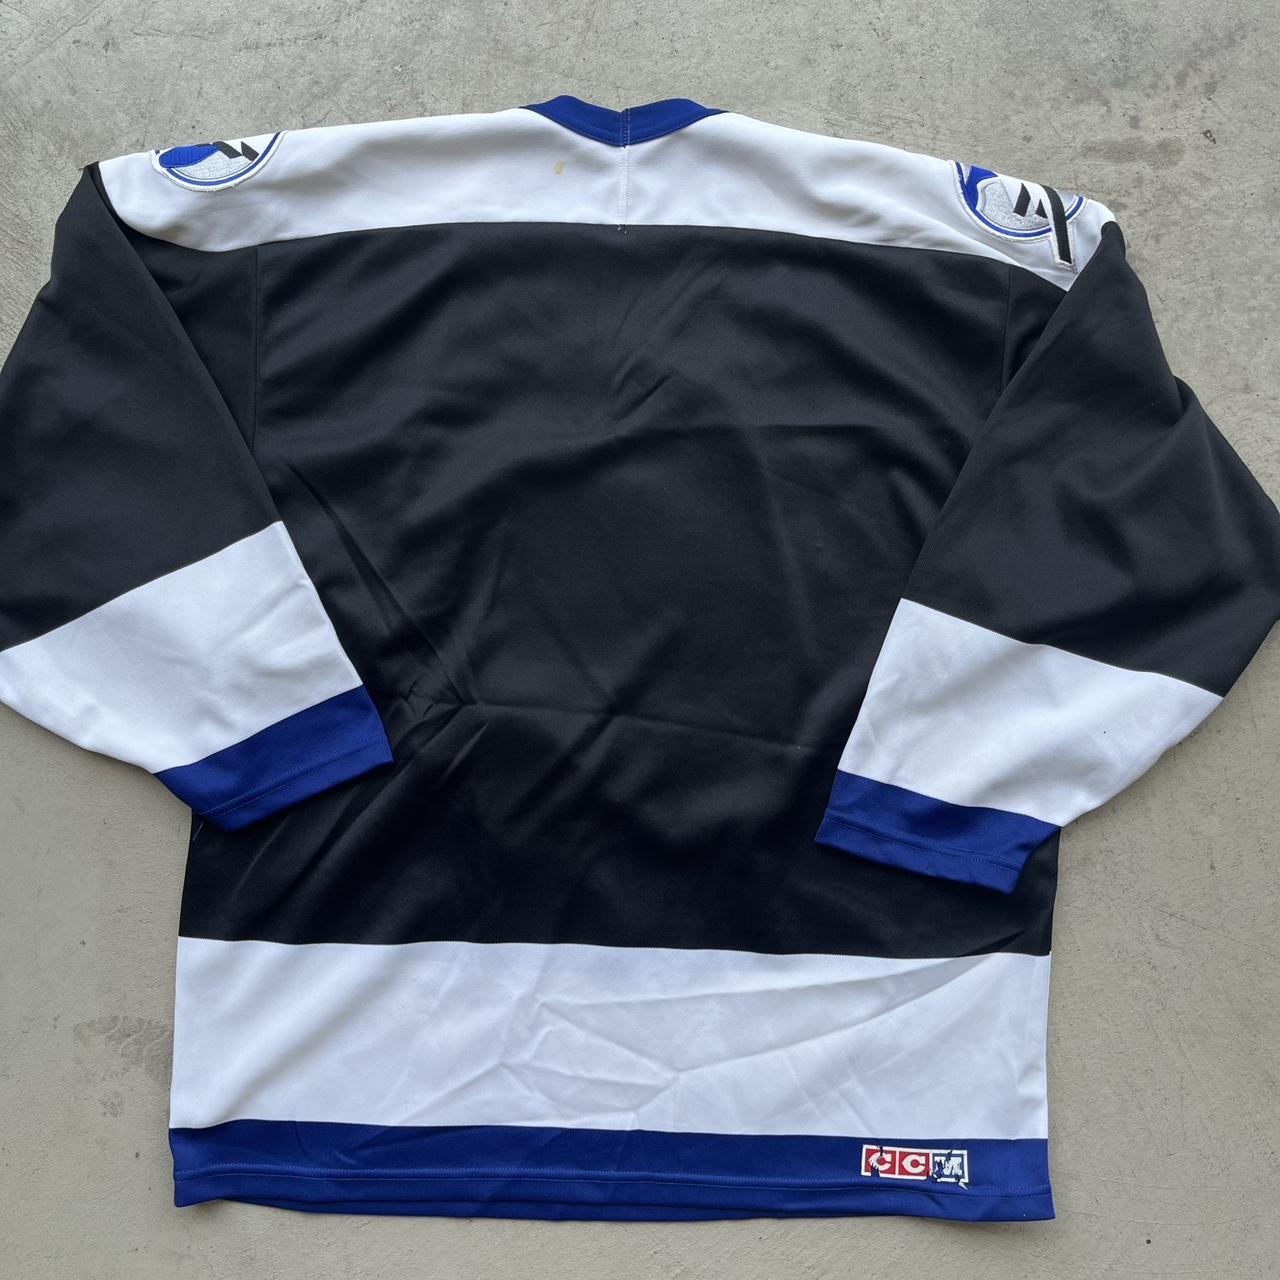 1992 tampa bay lightning jersey